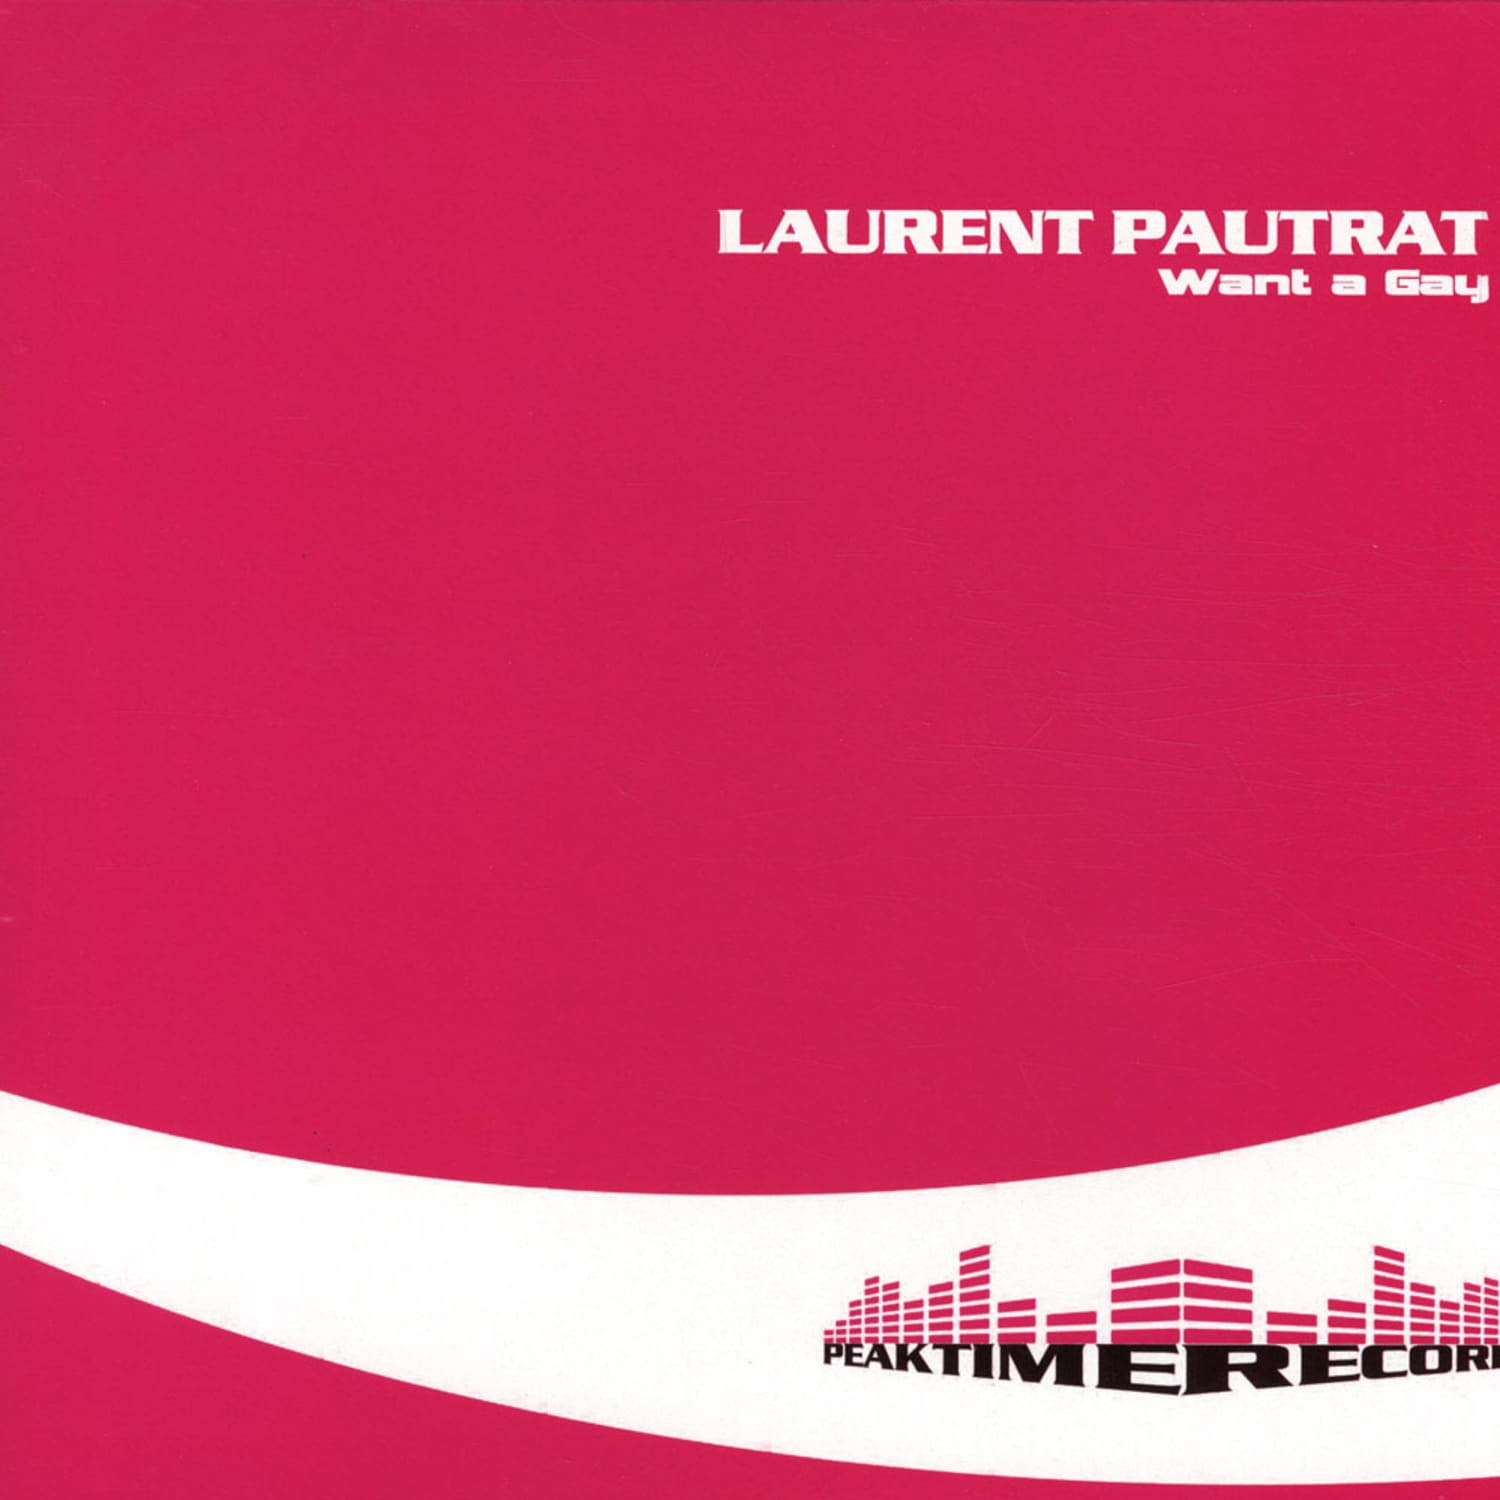 Laurent Pautrat - WANT A GAY